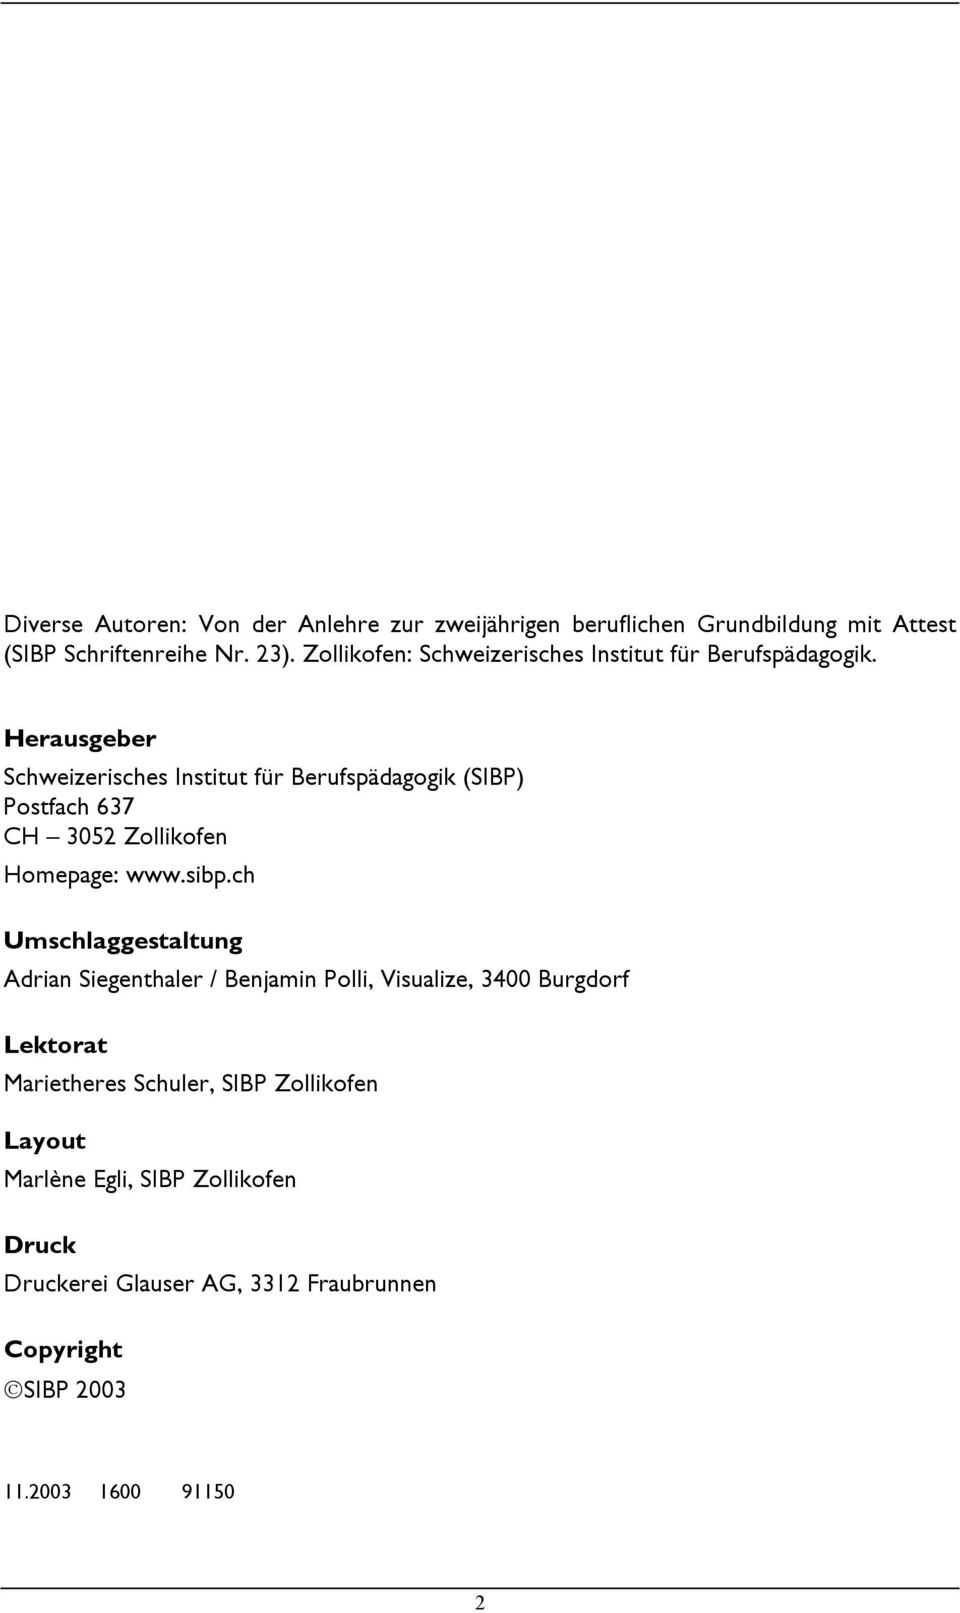 Herausgeber Schweizerisches Institut für Berufspädagogik (SIBP) Postfach 637 CH 3052 Zollikofen Homepage: www.sibp.